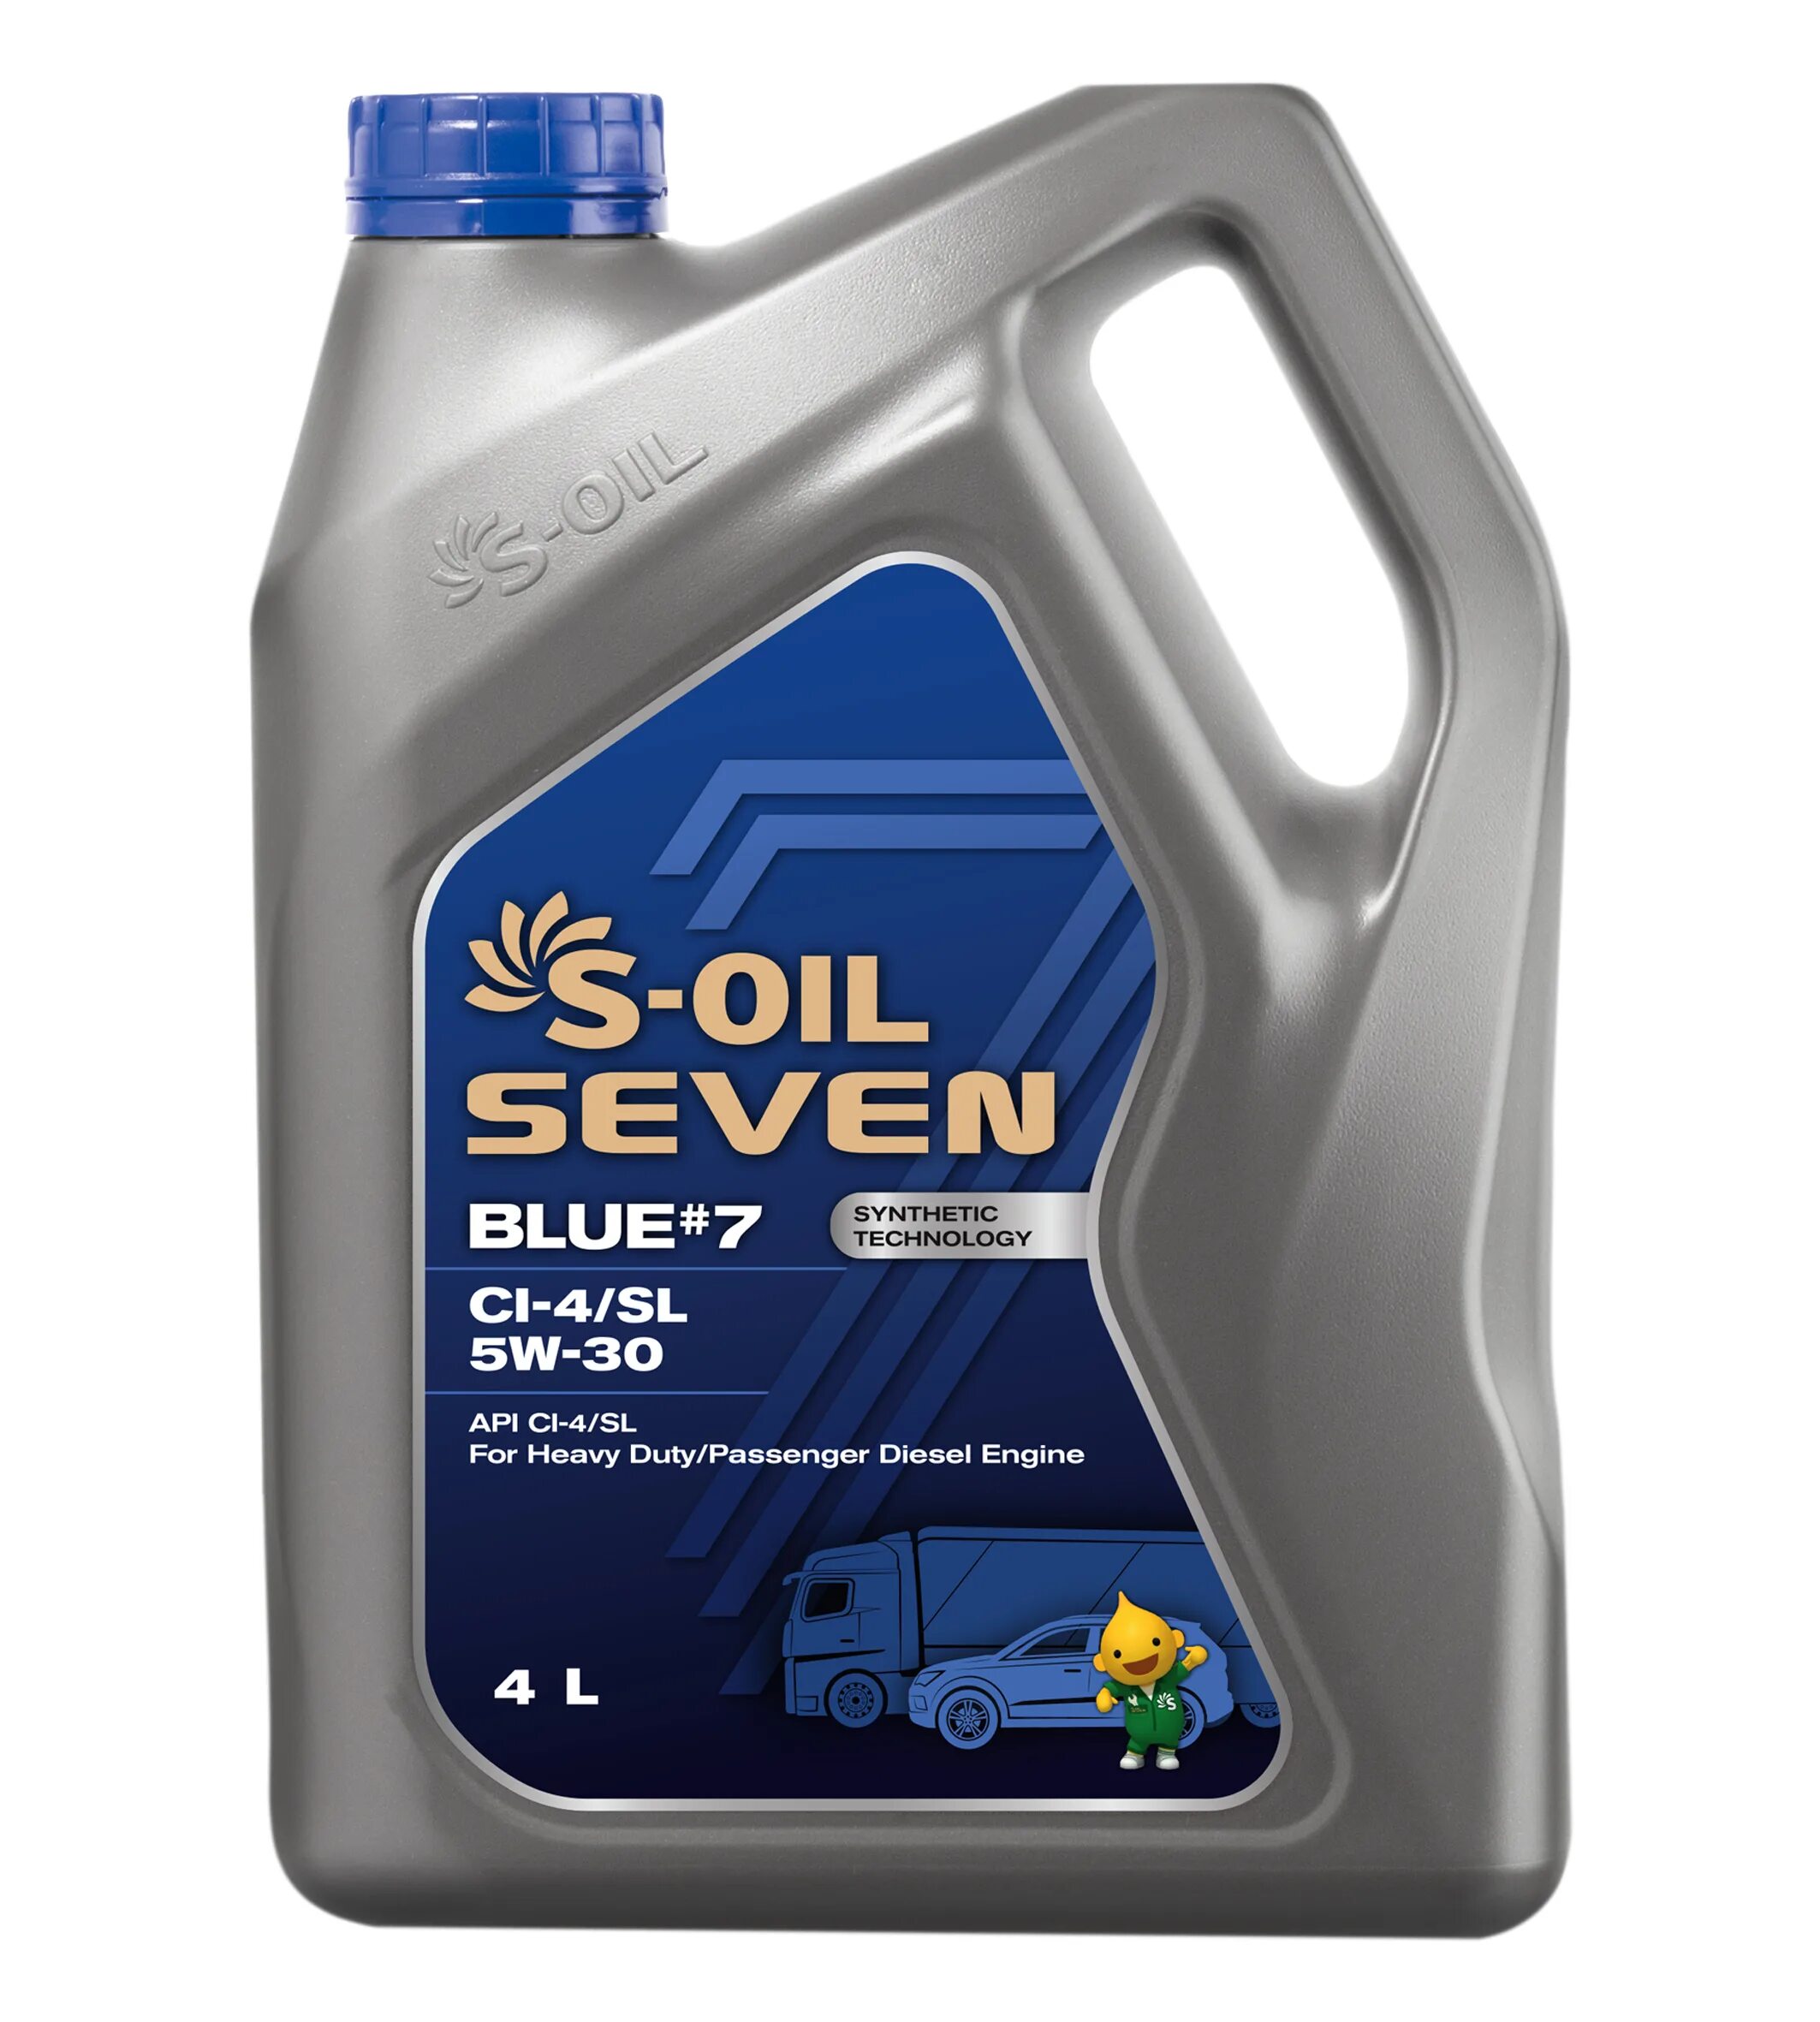 S-Oil 7 Blue #7 ci-4/SL 5w30. S-Oil Seven 5w30 SP. S-Oil Seven 5w-30. S-Oil 7 Blue #7 ci-4/SL 5w-30 (4x4).